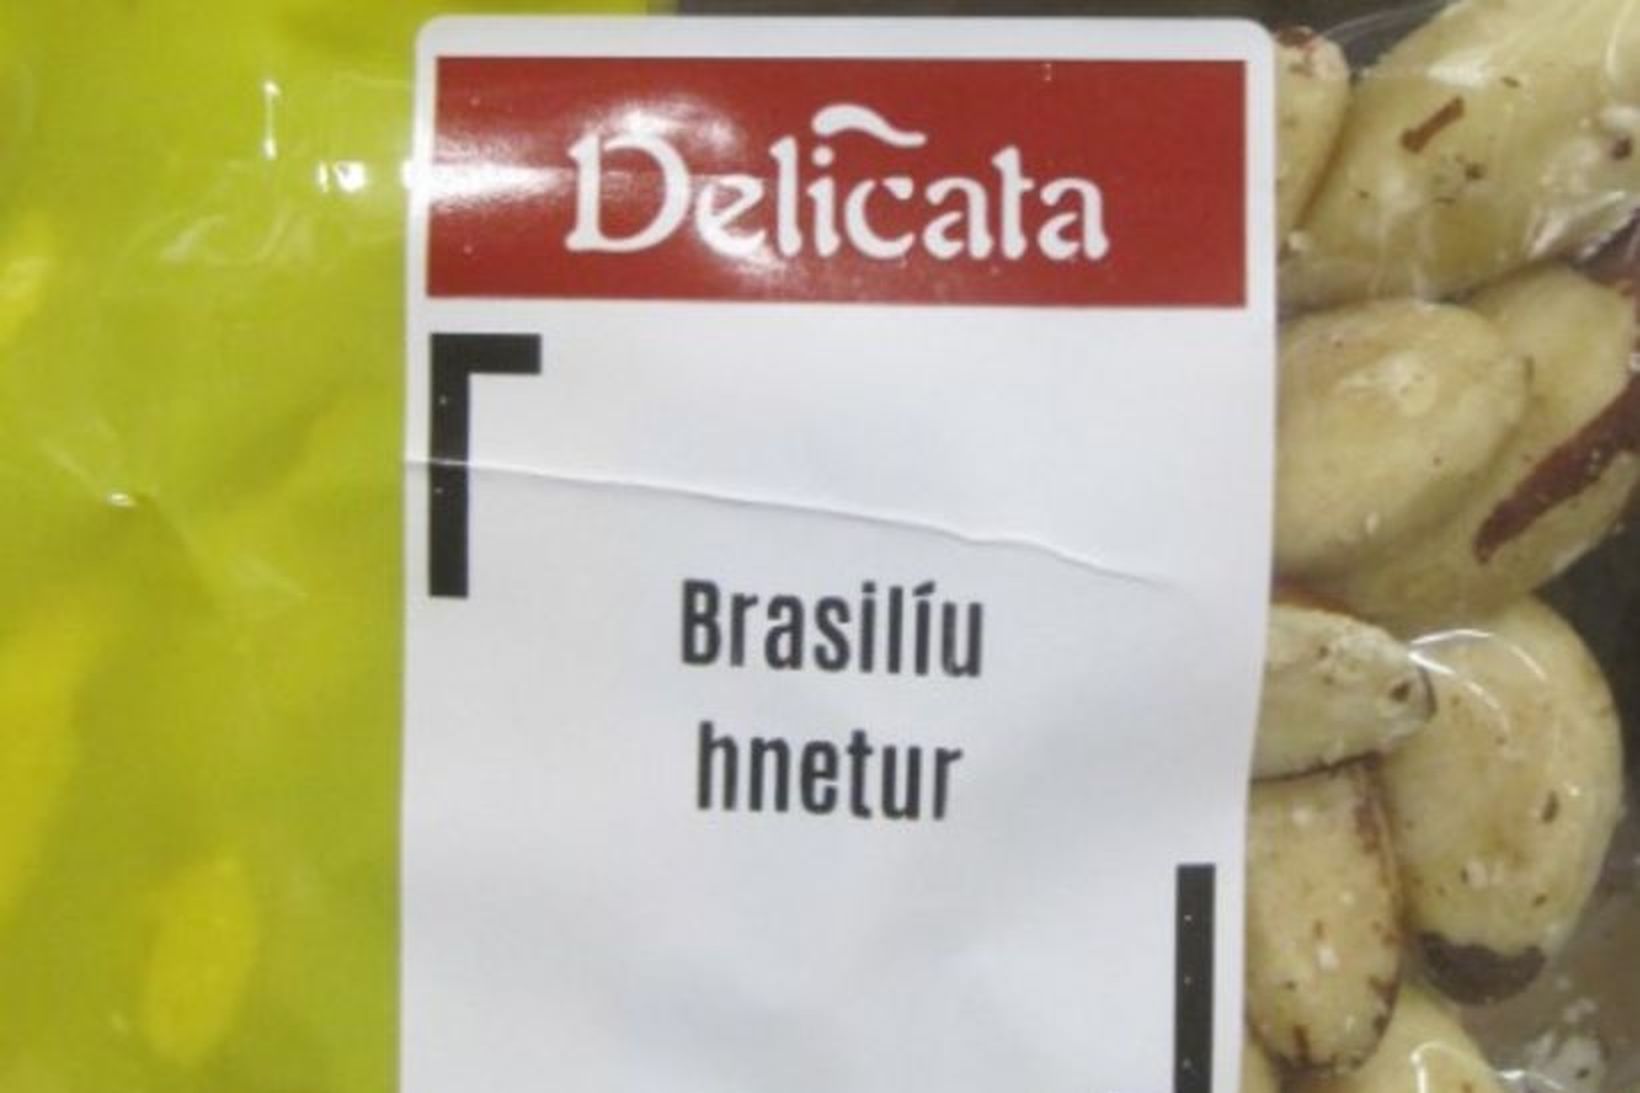 Delicata Brasilíuhnetur.